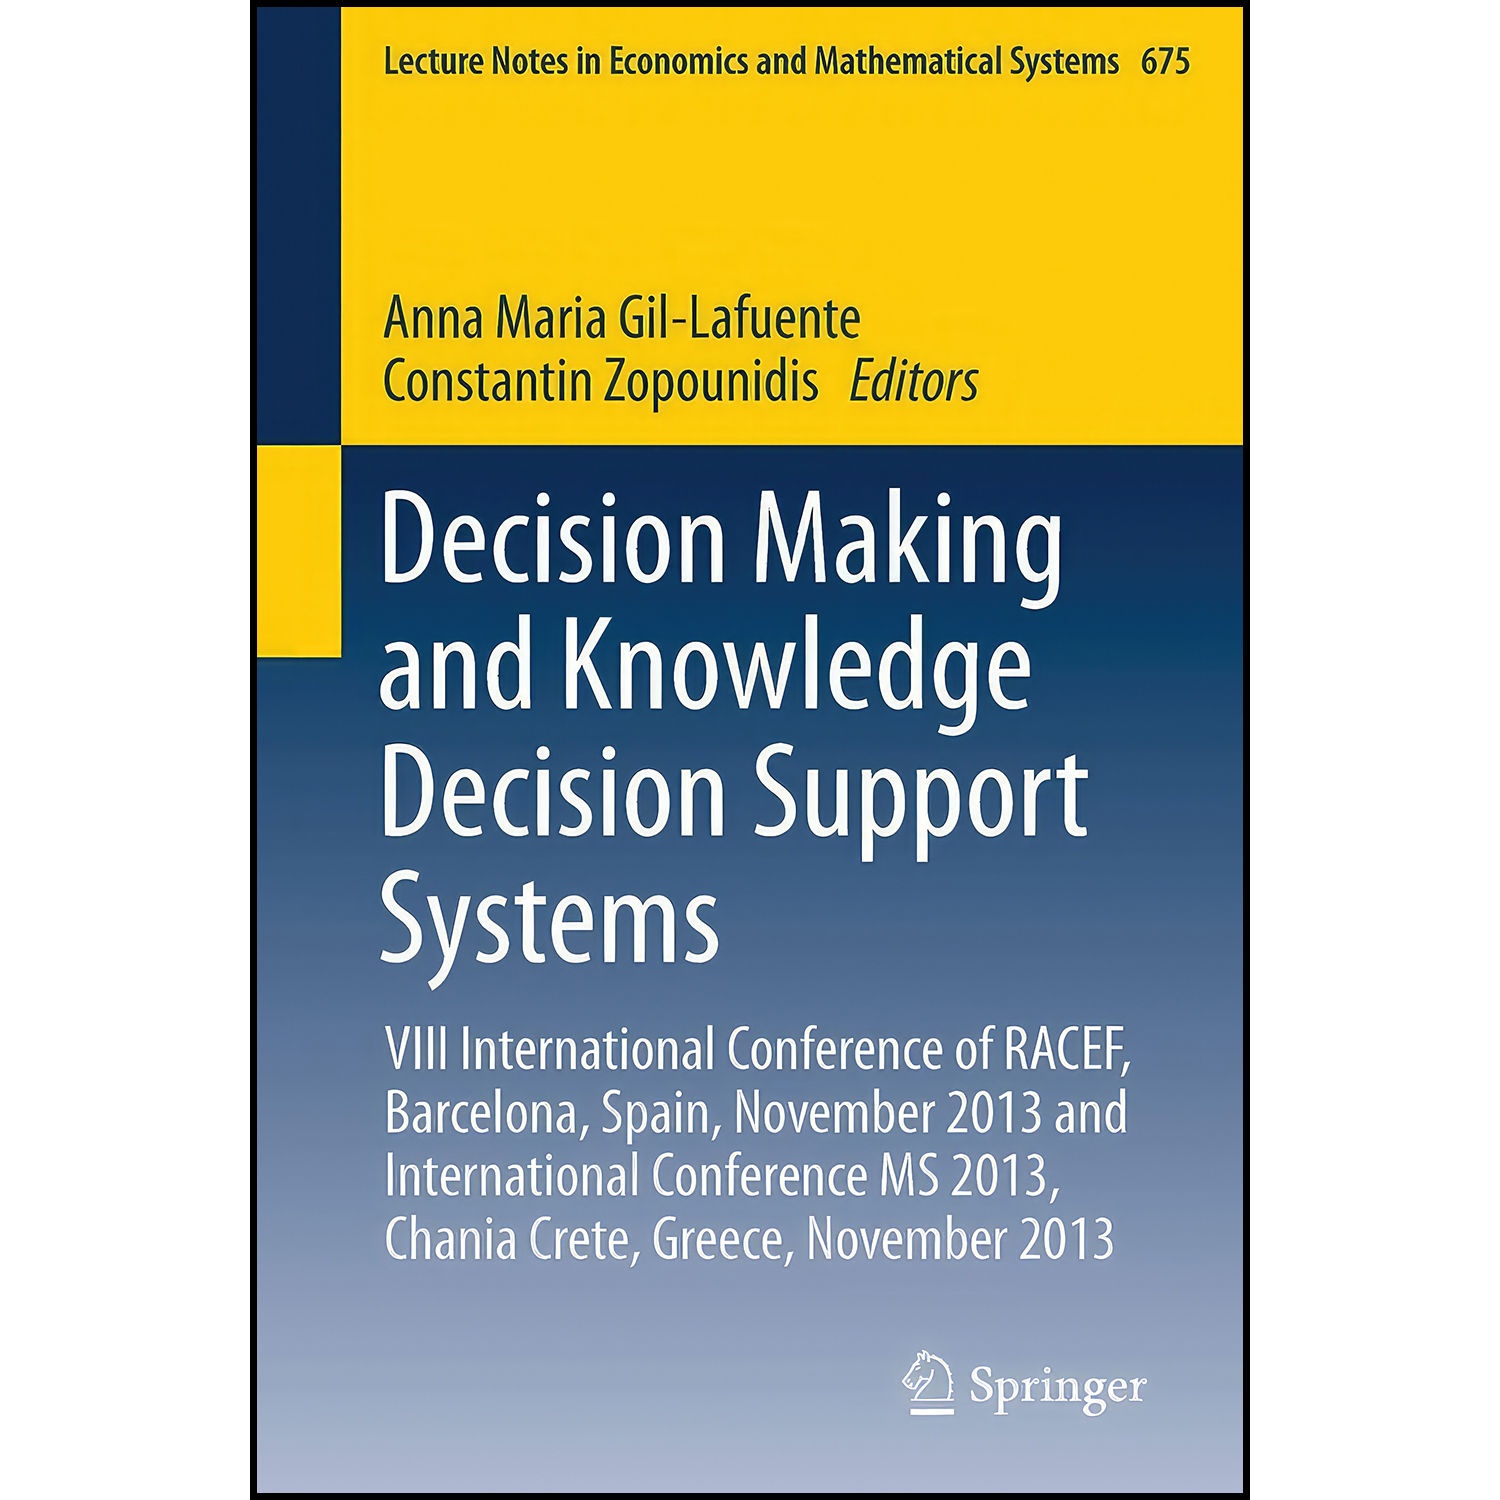 کتاب Decision Making and Knowledge Decision Support Systems  اثر جمعي از نويسندگان انتشارات Springer